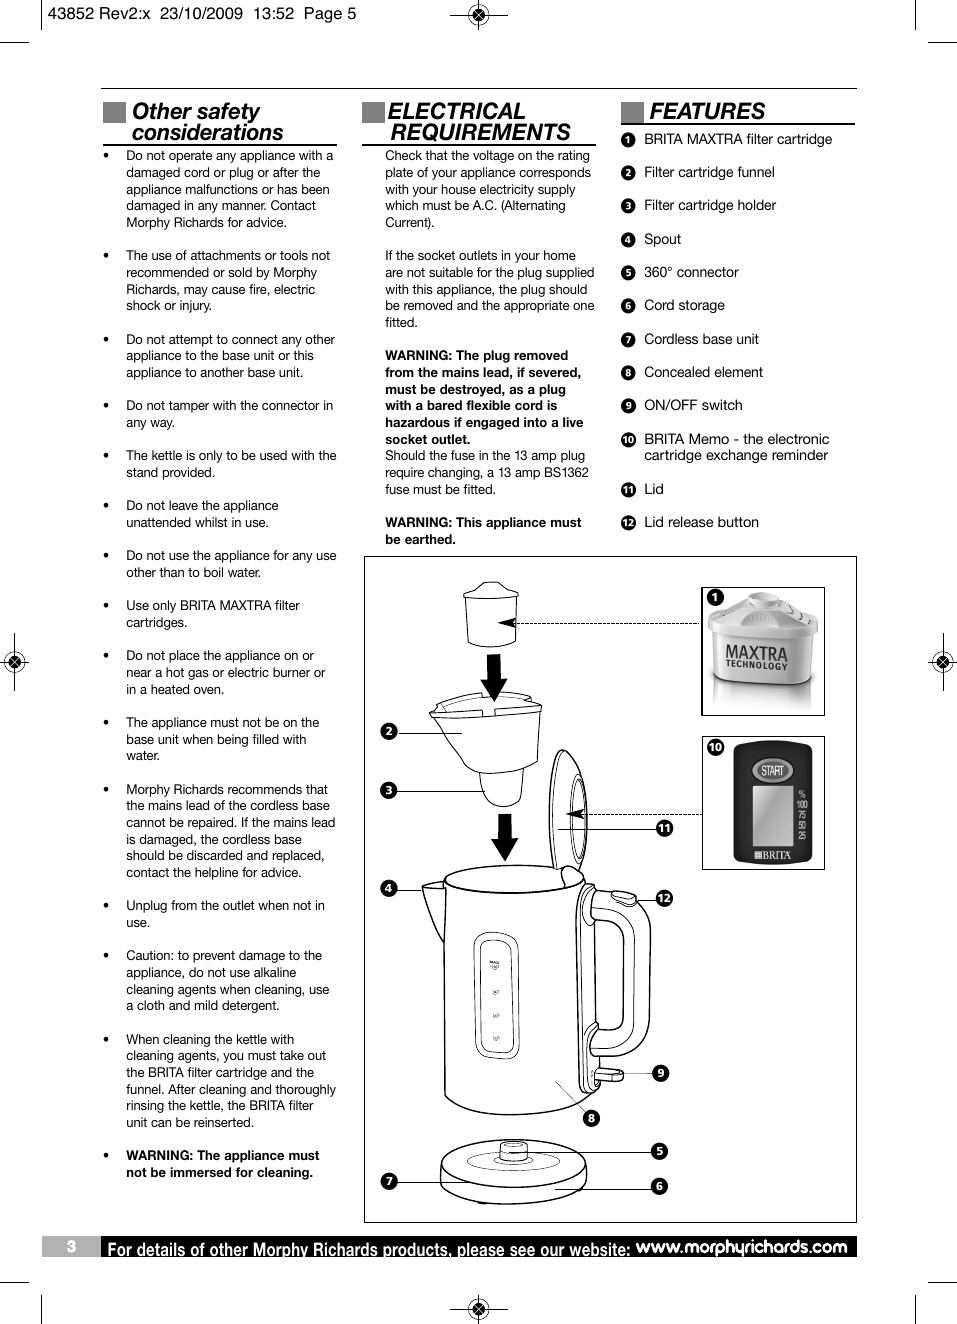 Page 5 of 6 - Brita Brita-Brita-Lp-Water-Dispenser-43852-Users-Manual- Logos6 Bw  Brita-brita-lp-water-dispenser-43852-users-manual